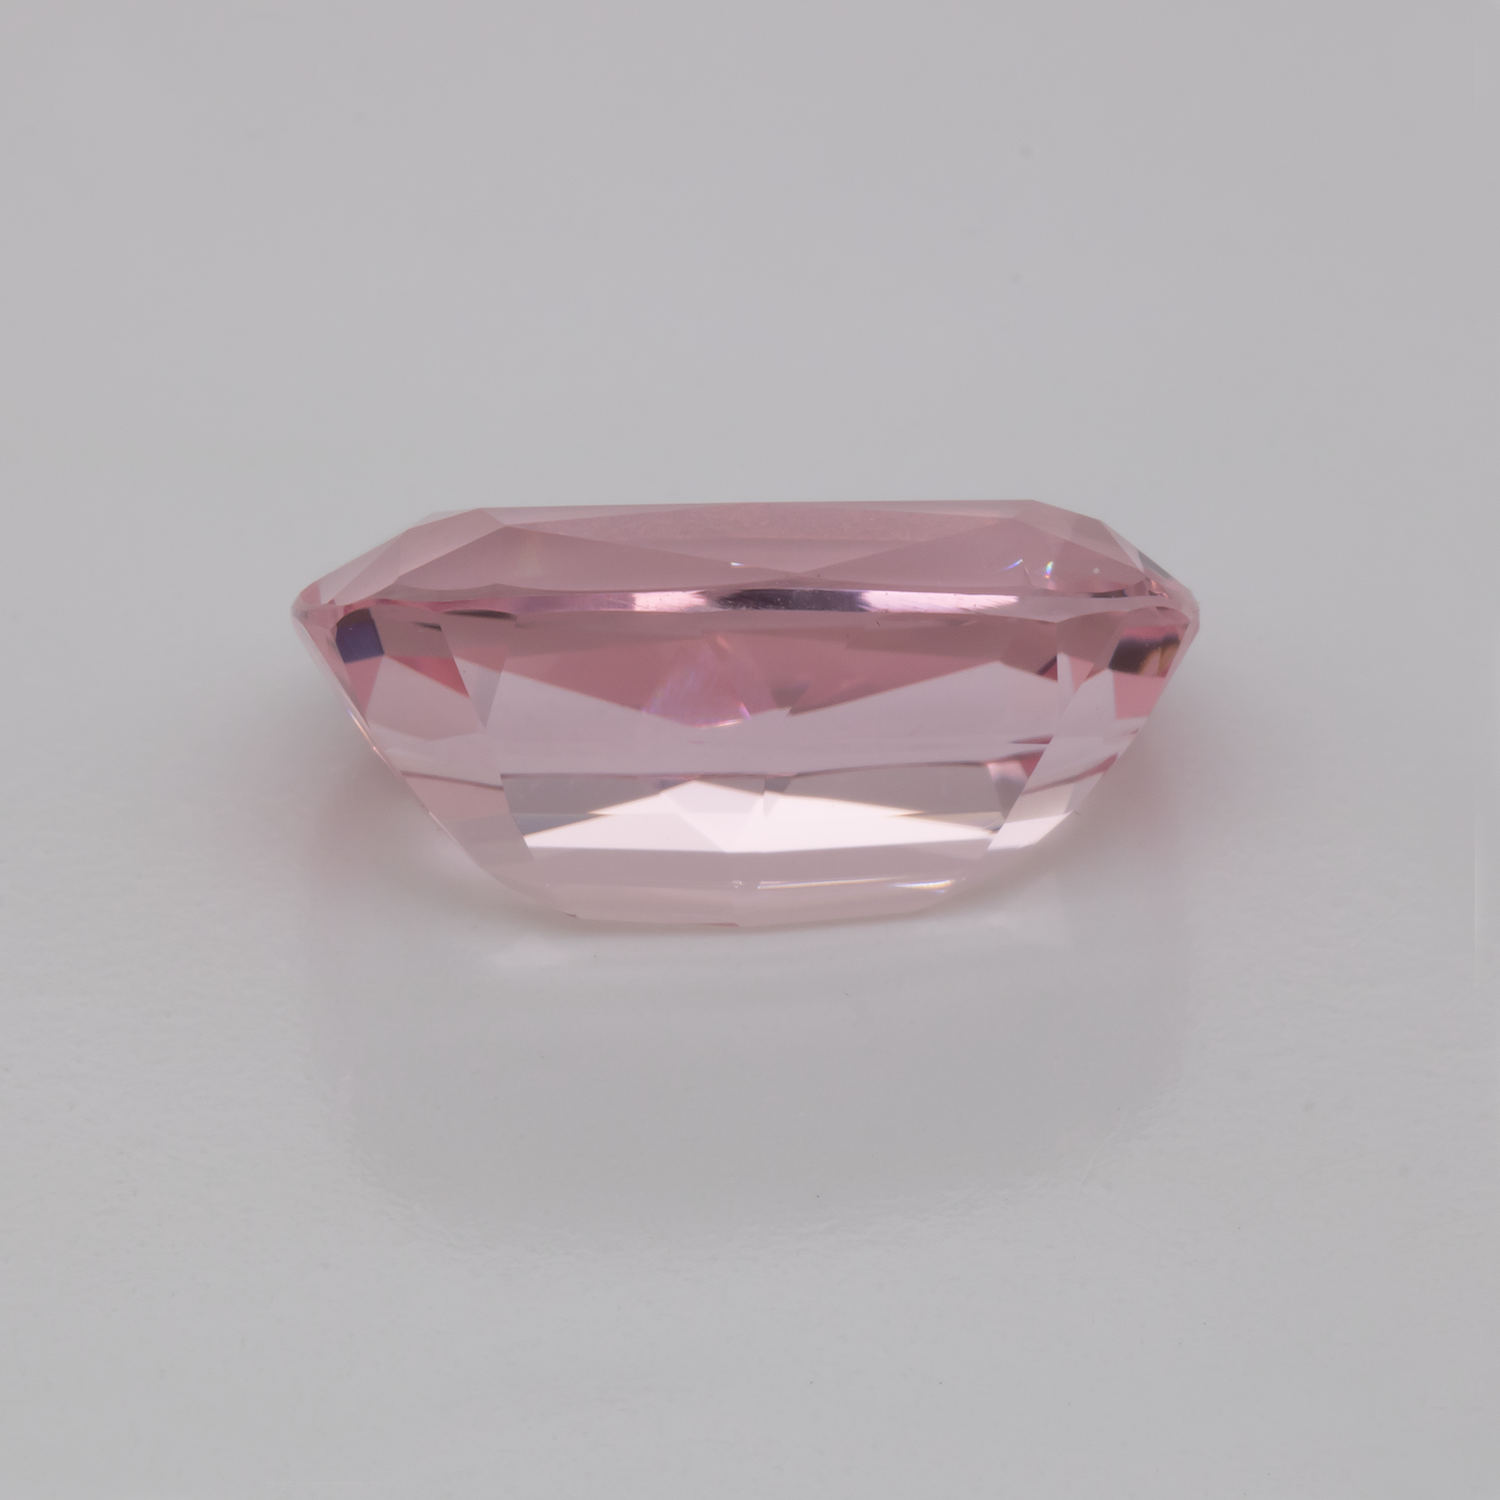 Morganite - pink, cushion, 16x11 mm, 8.04 cts, No. MO46010